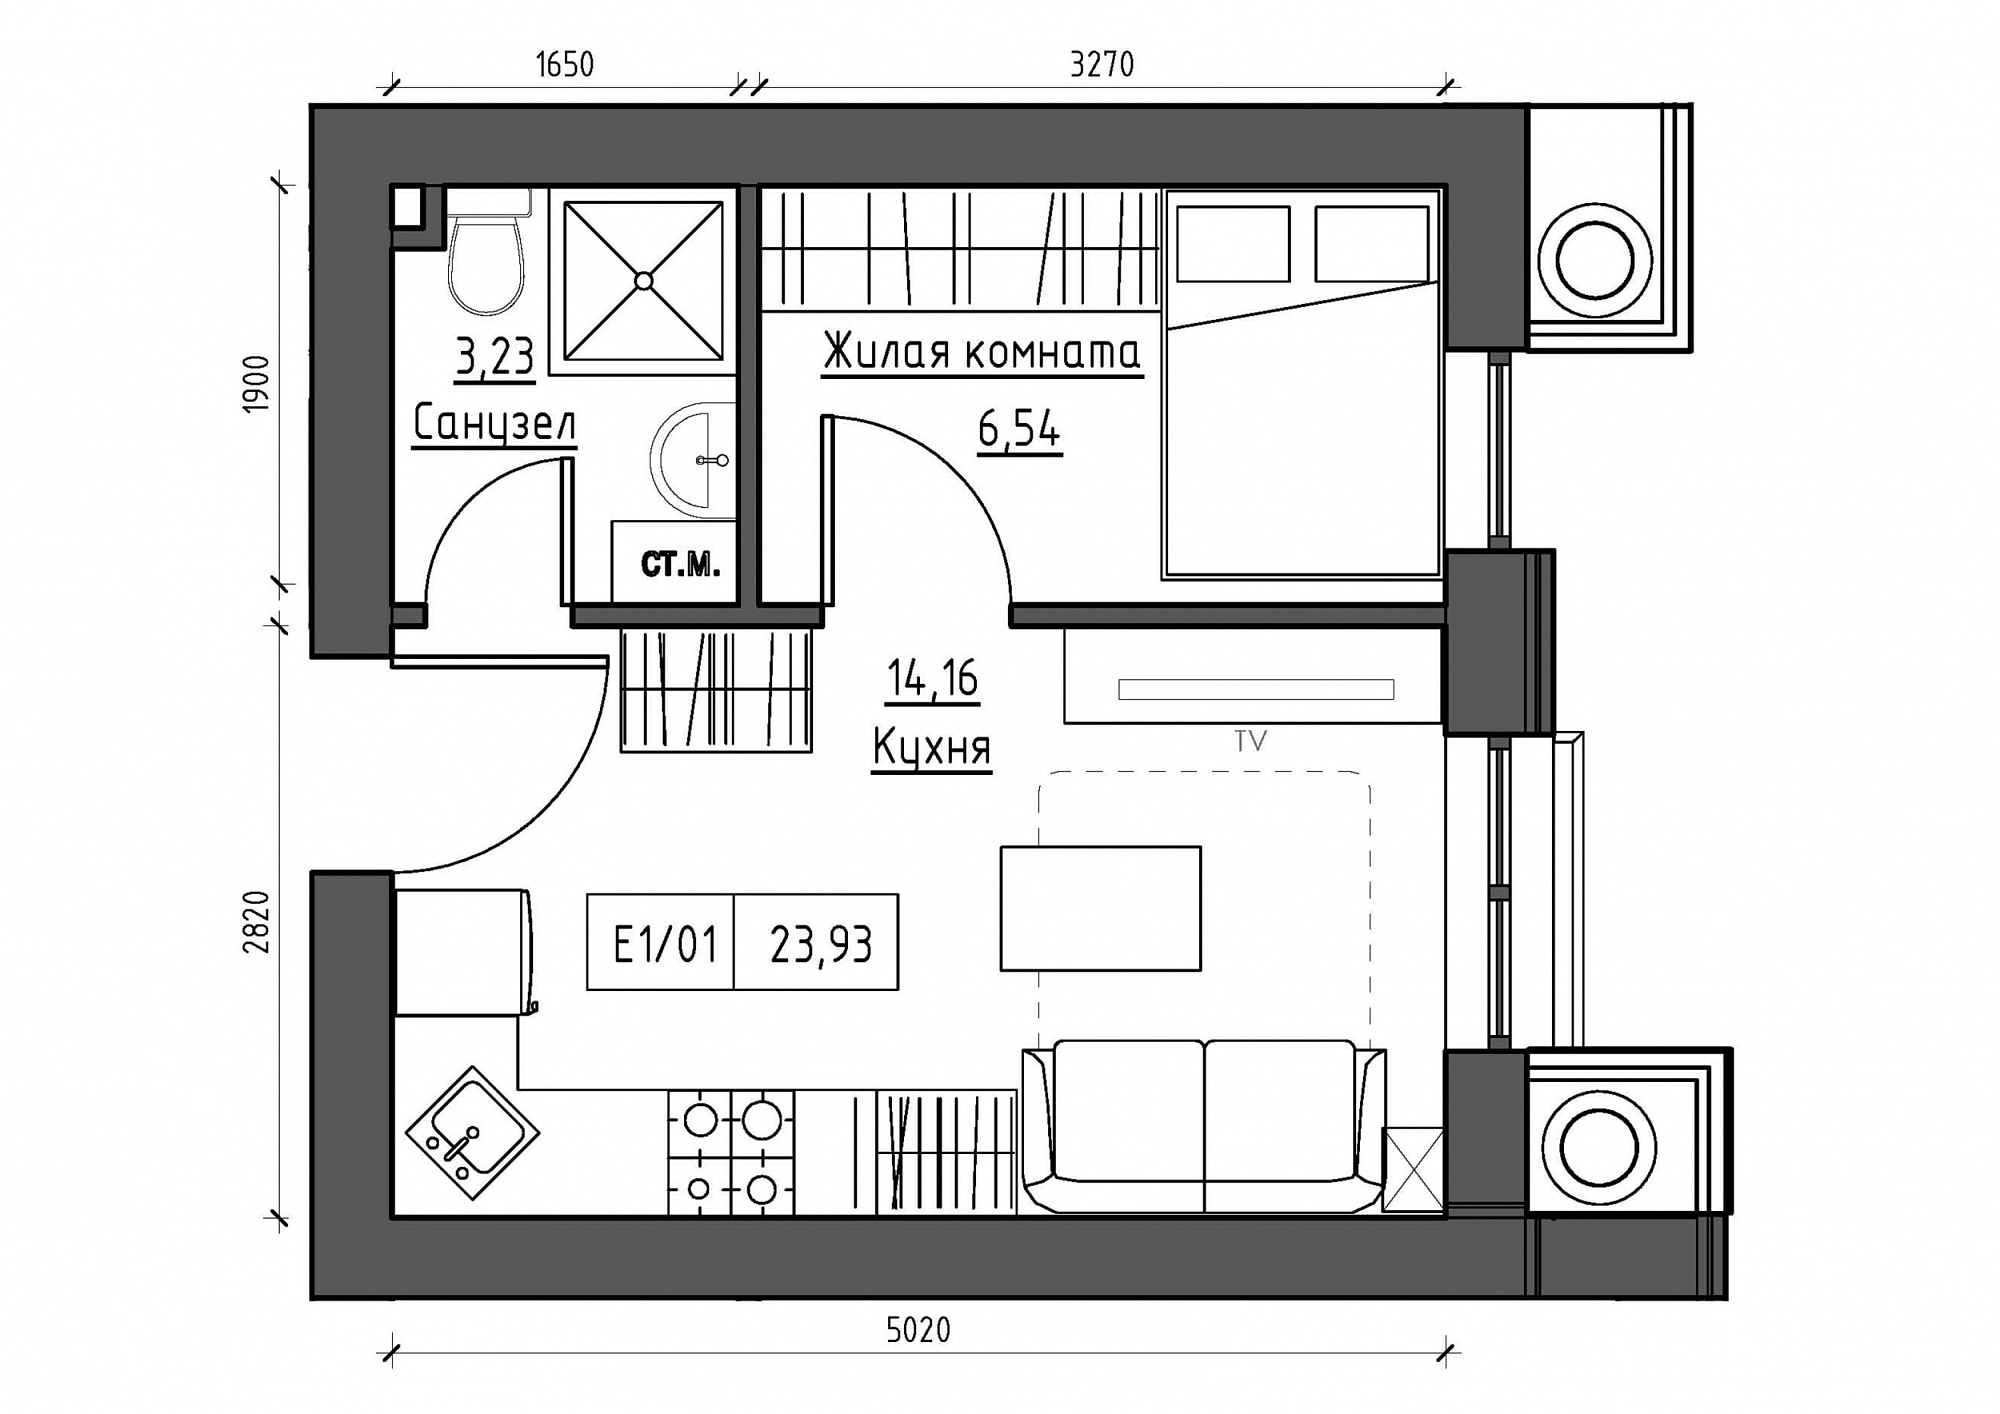 Планування 1-к квартира площею 23.93м2, KS-011-02/0004.